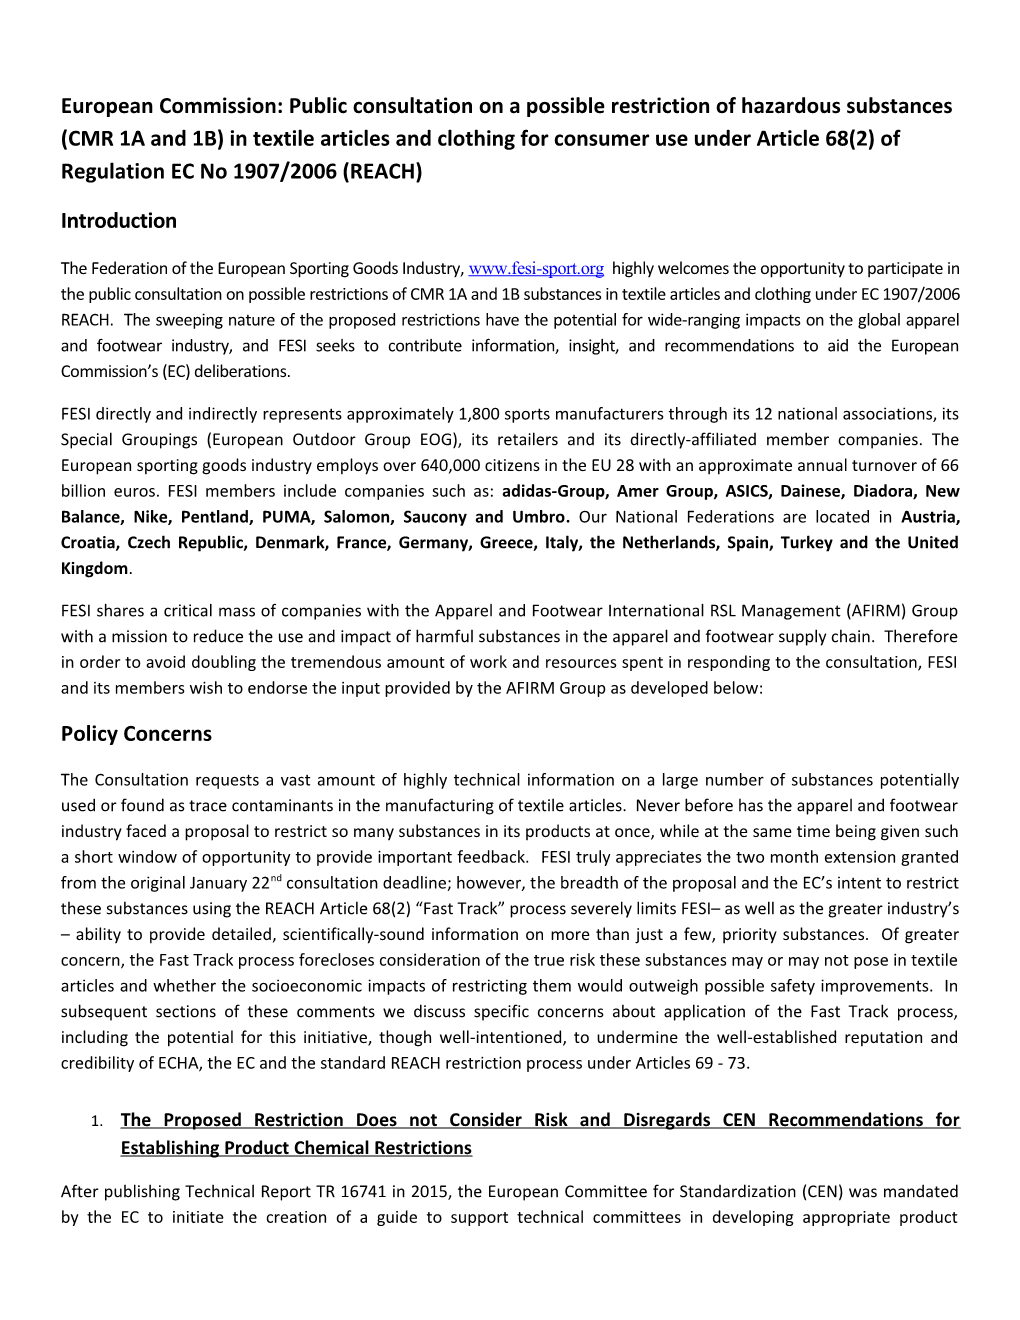 European Commission: Public Consultation on a Possible Restriction of Hazardous Substances